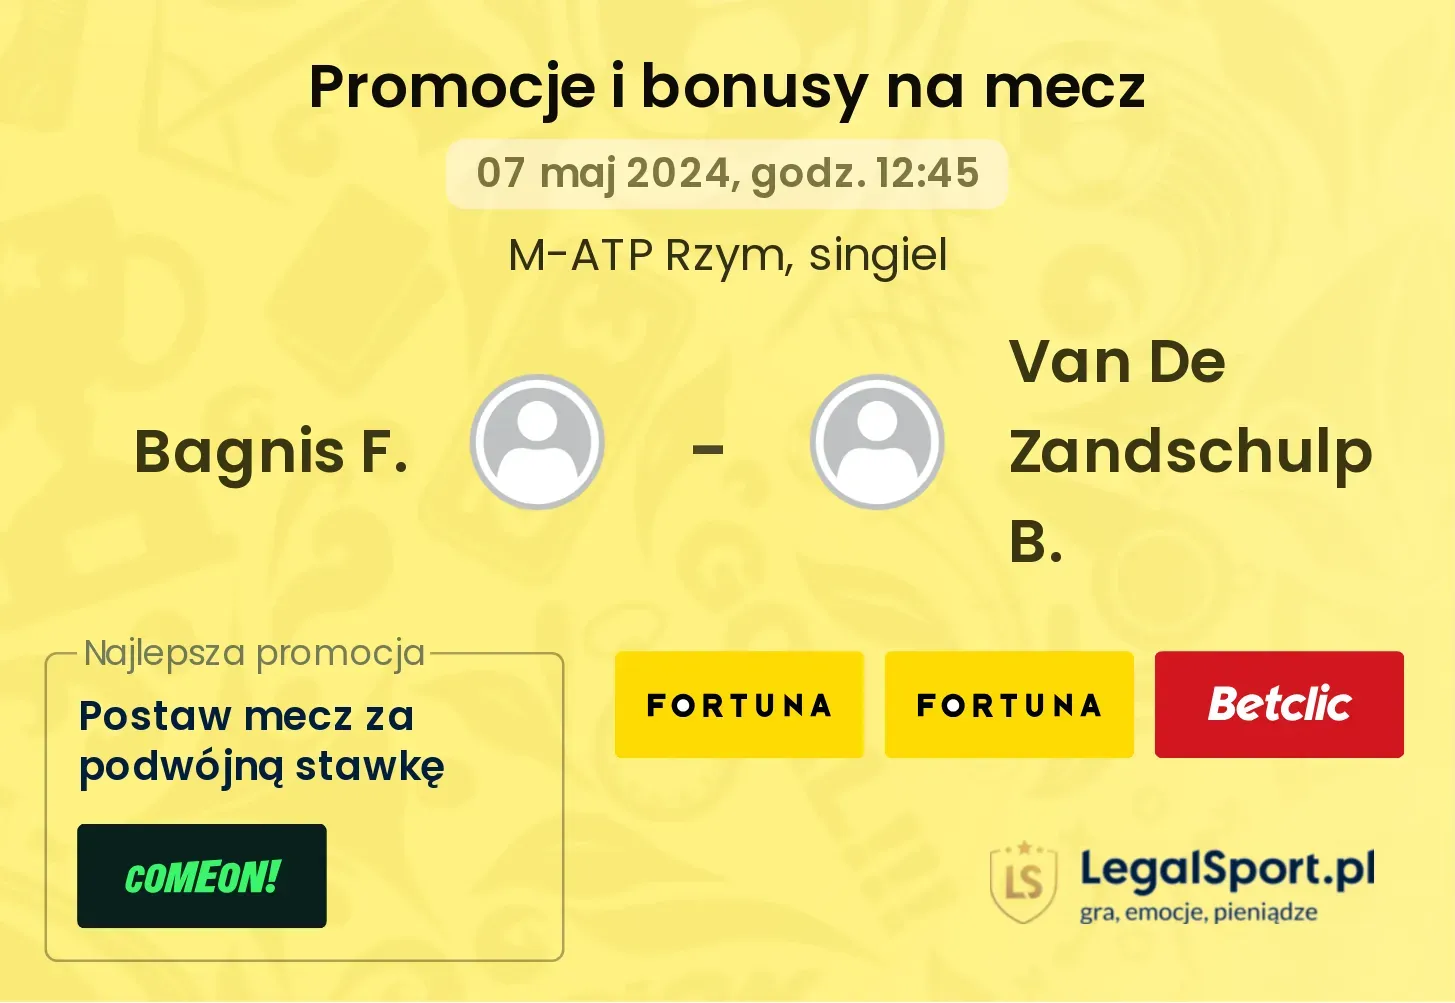 Bagnis F. - Van De Zandschulp B. promocje bonusy na mecz